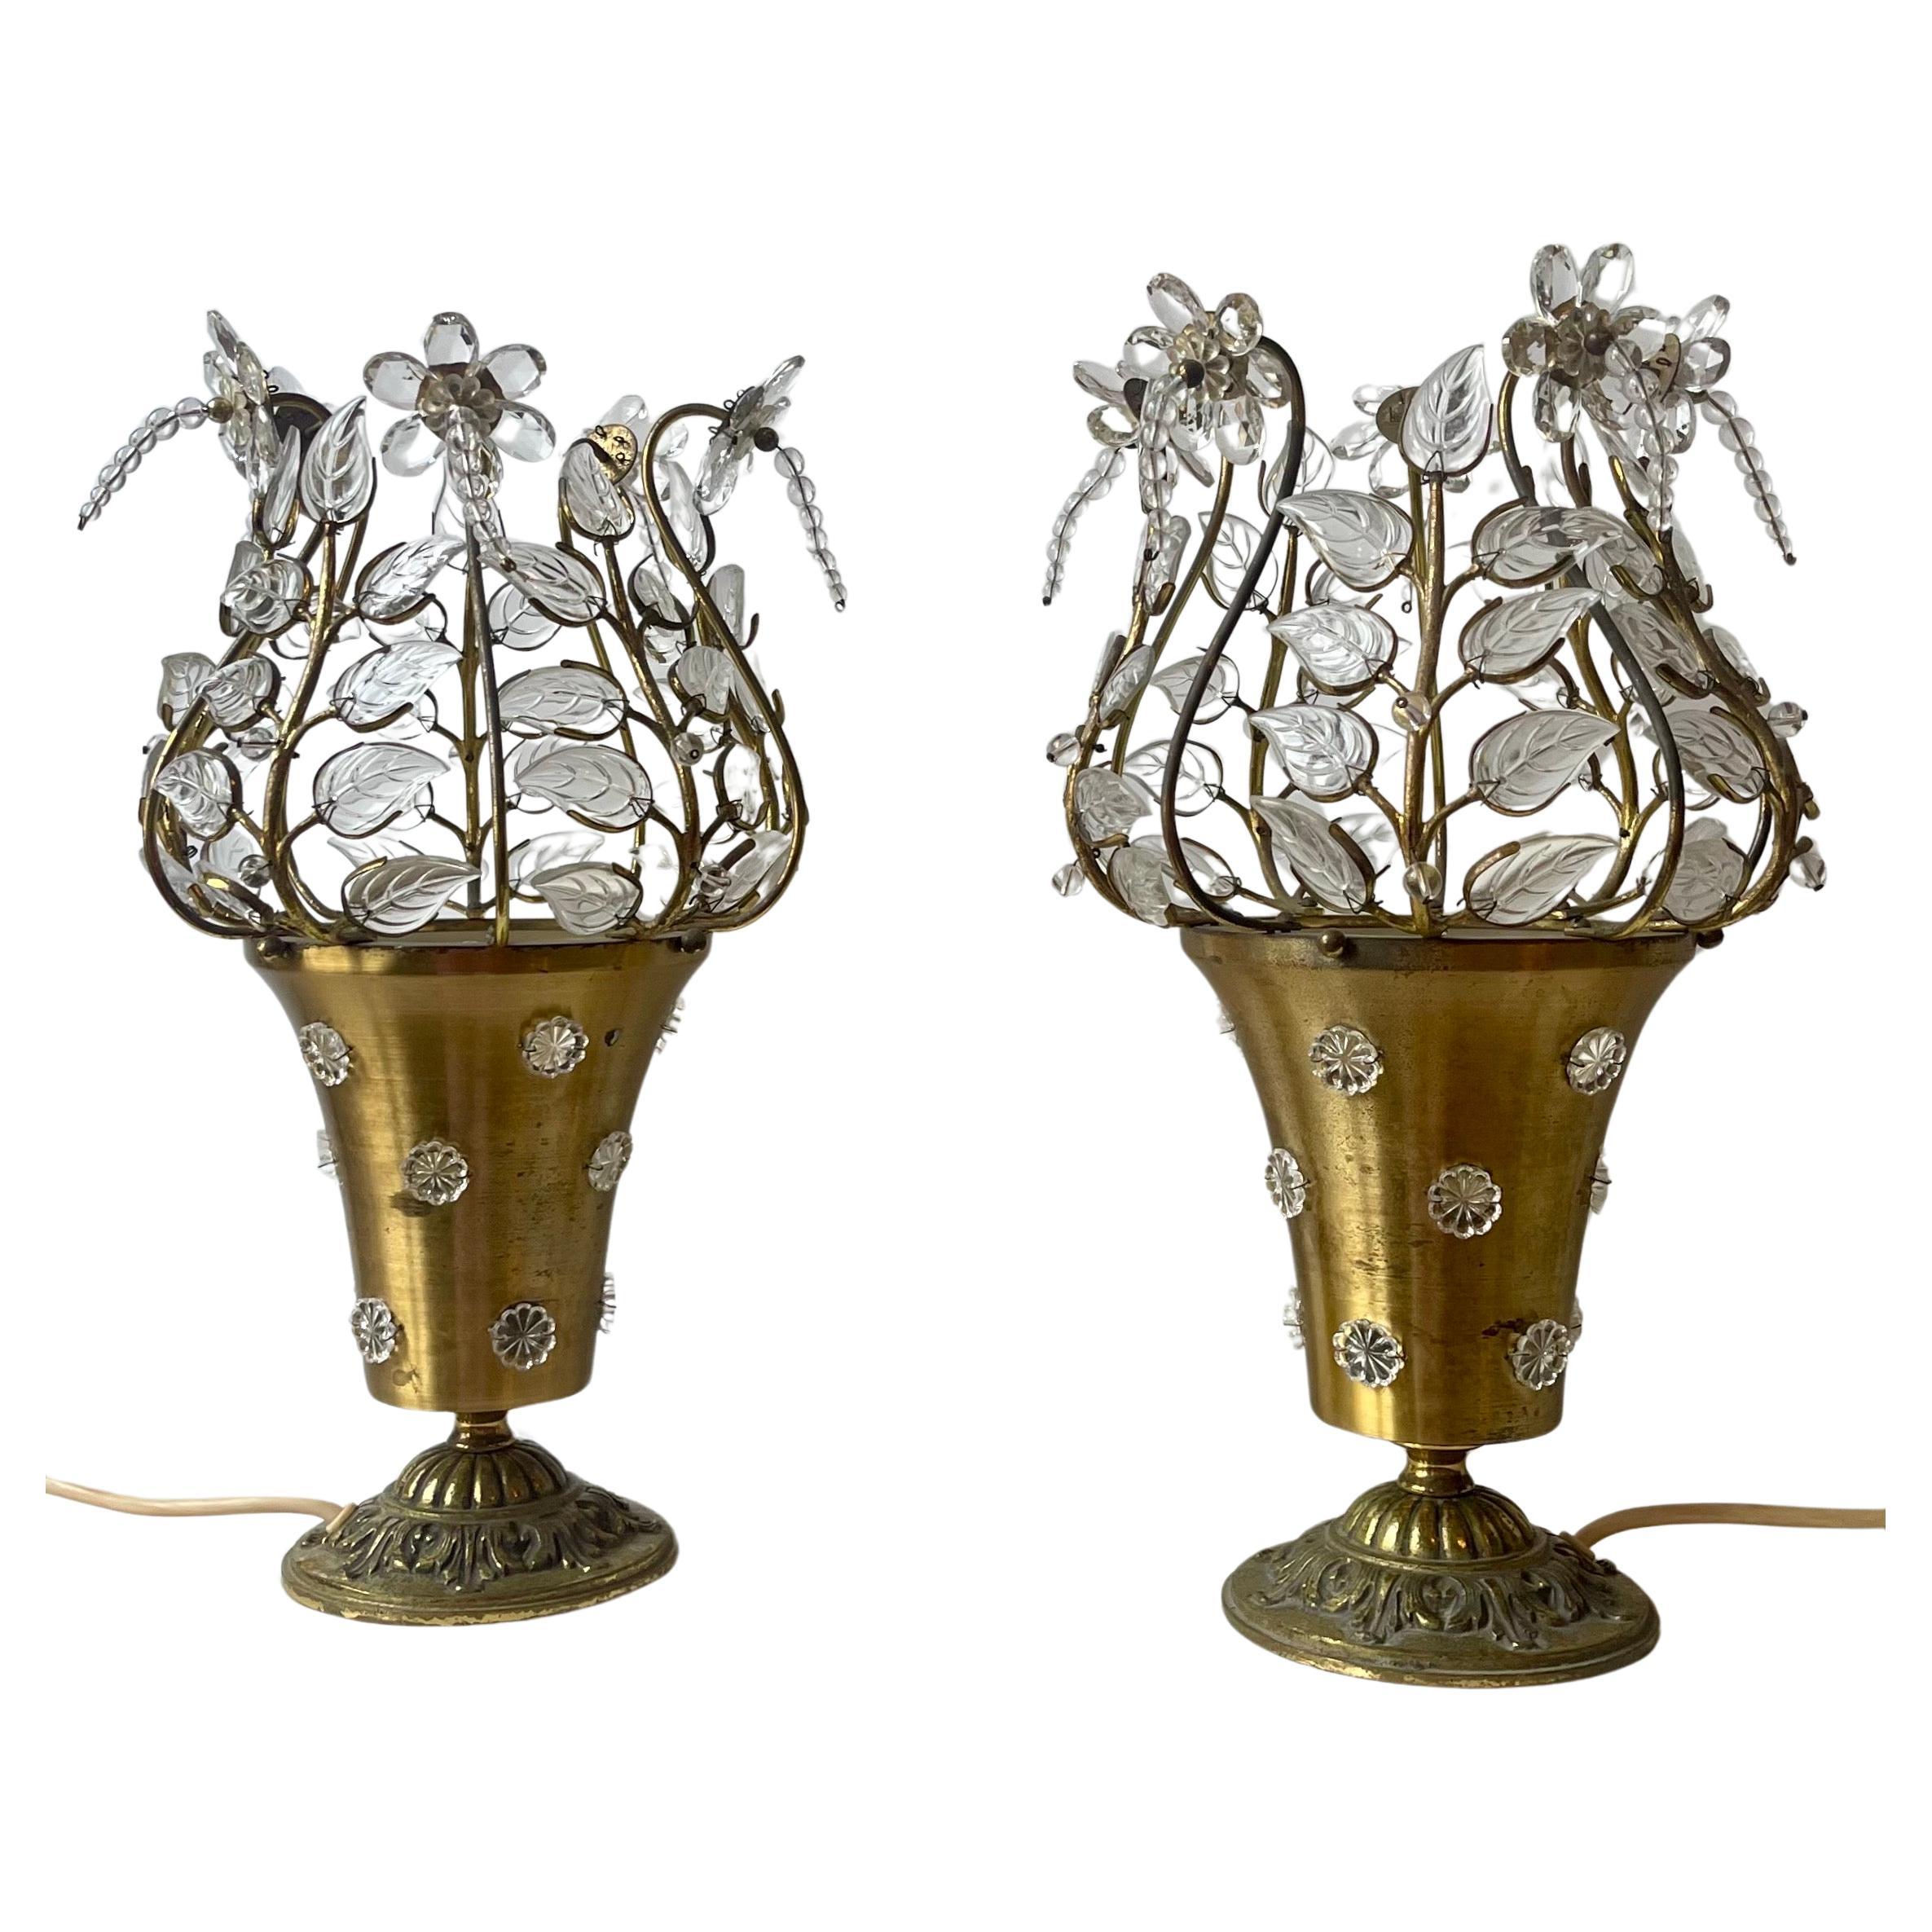 Seltenes Paar Tischlampen mit Blumen aus Klarglas und Bronze im Stil von Maison Baguès, Frankreich, um 1950.
Steckdose:  je 1 x E27 oder E26 (US)  für Standard-Schraubglühbirnen.

 